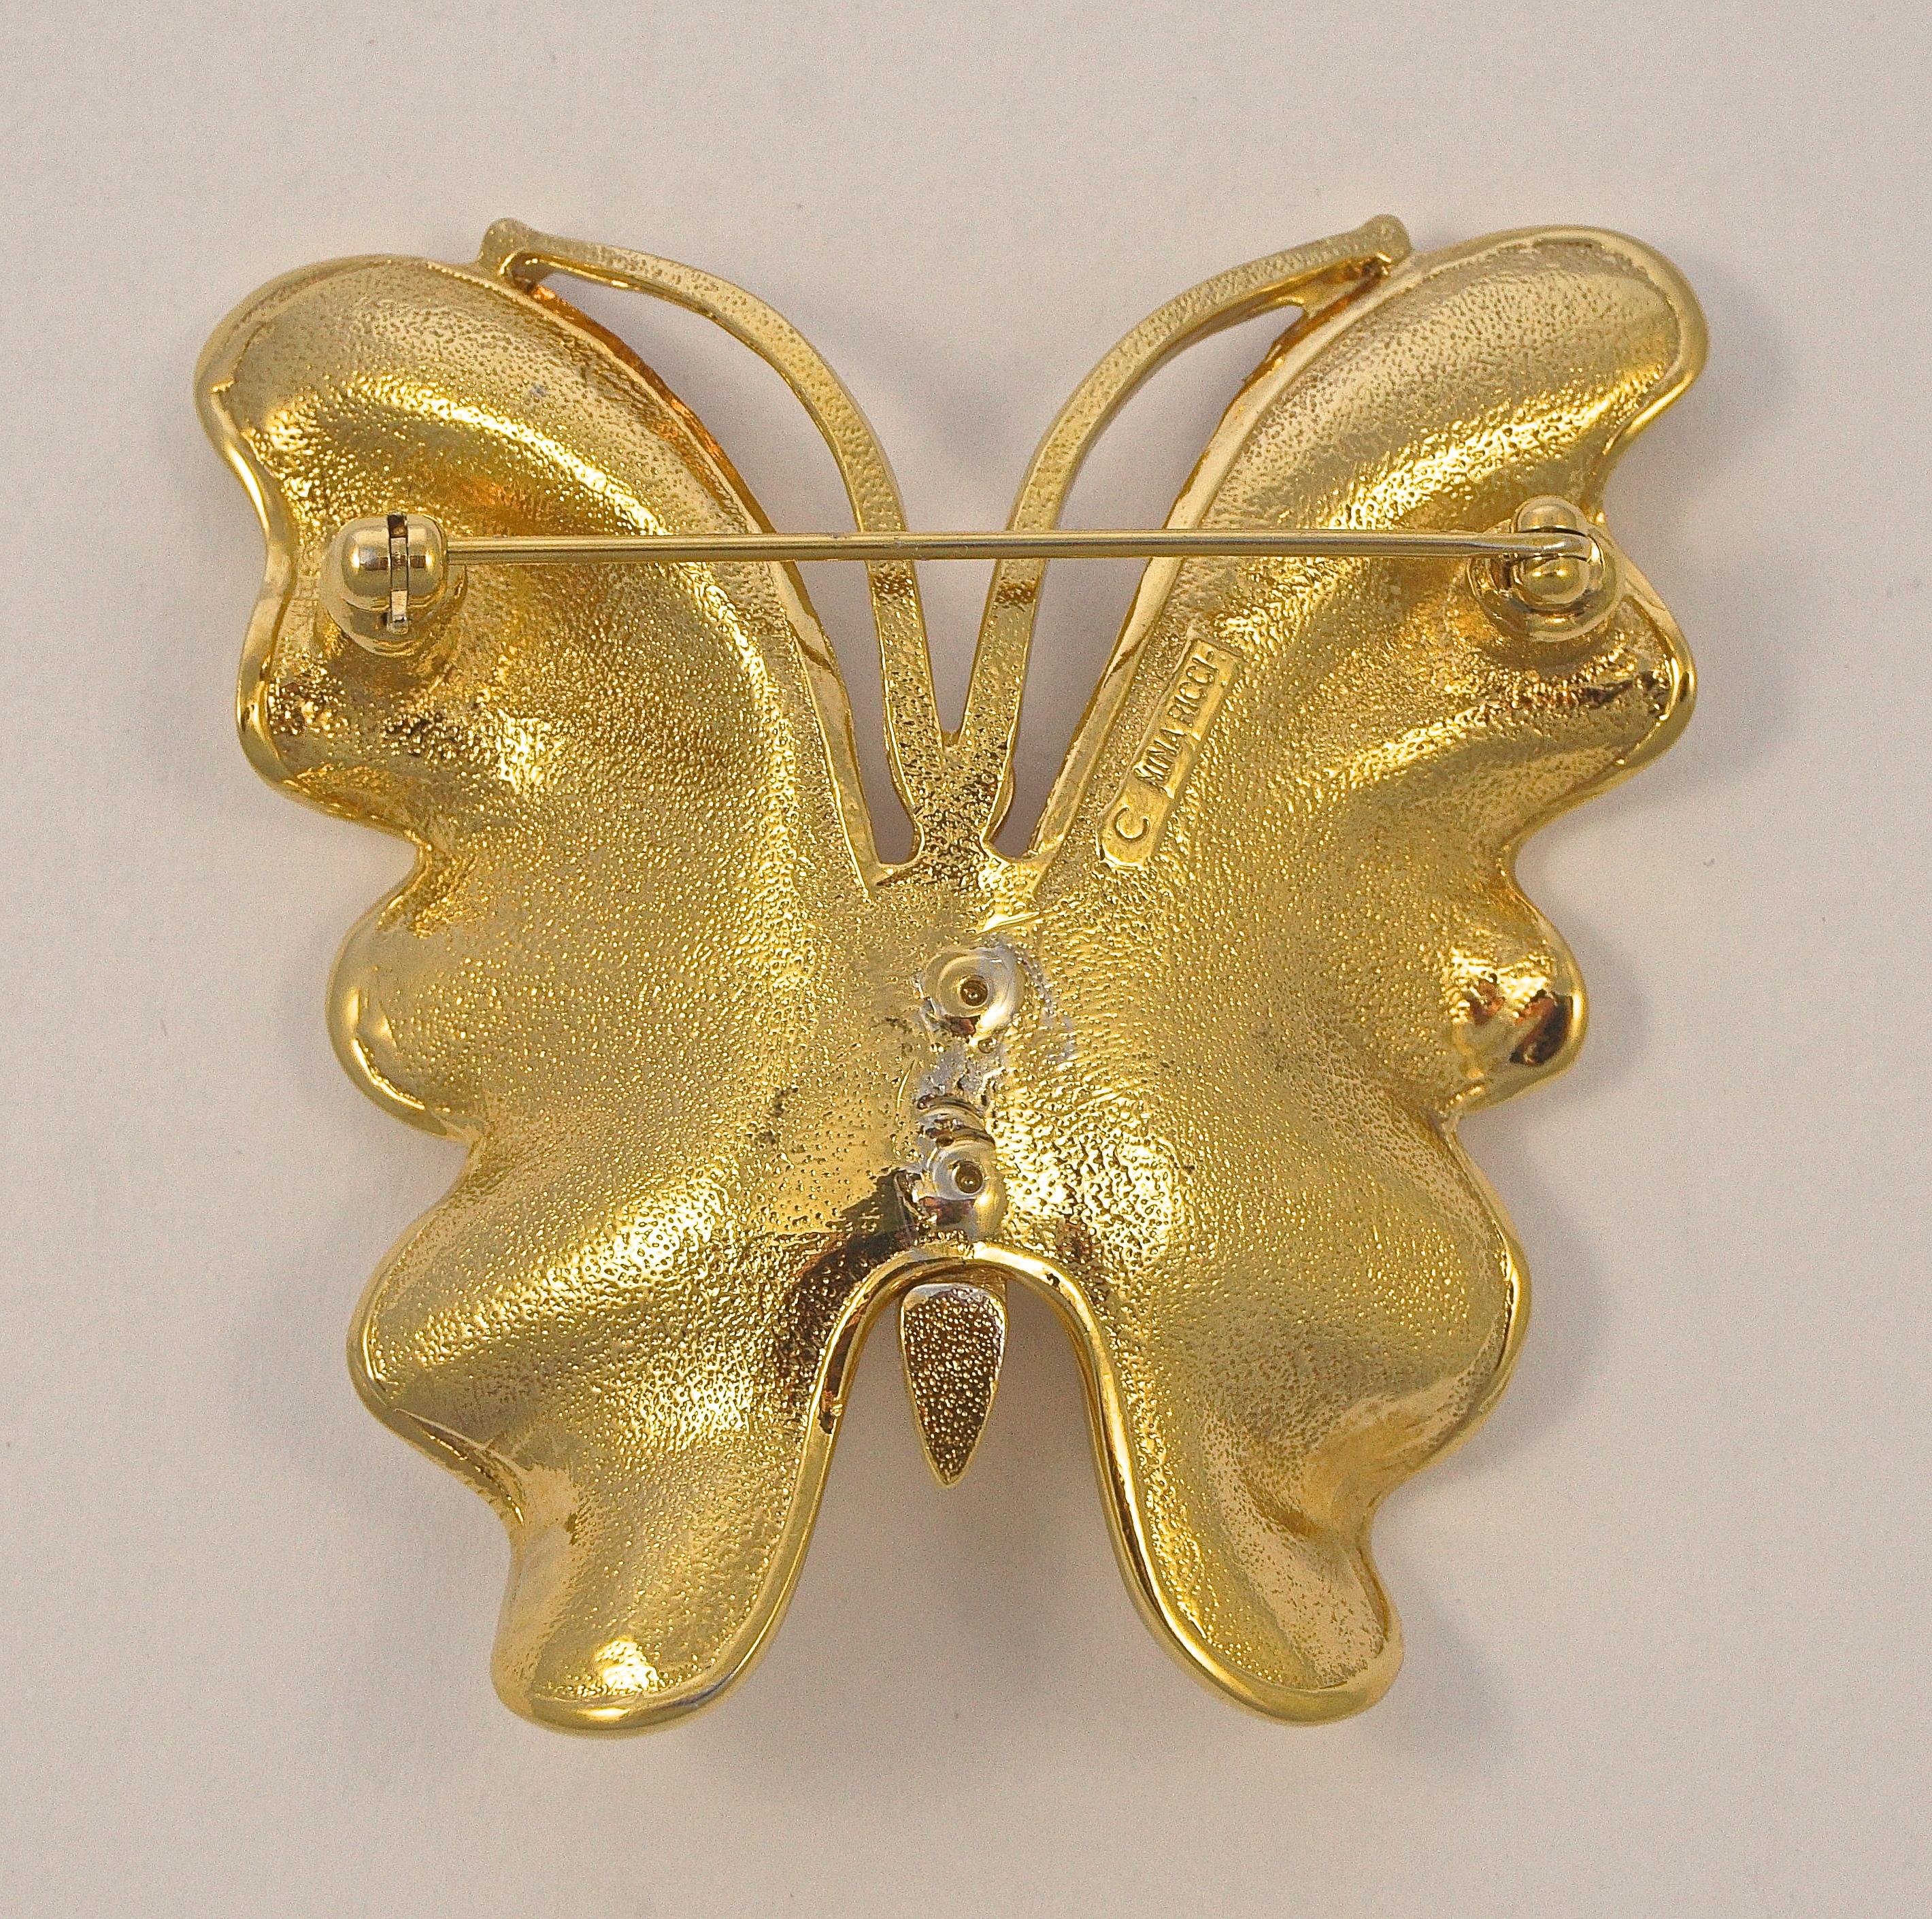 Fabelhafte Nina Ricci große vergoldete glänzende Schmetterlingsbrosche, die Rückseite ist strukturiert. Länge 5,3 cm / 2,08 Zoll und Breite 5,2 cm / 2,05 Zoll. Es gibt einige Kratzer auf der Goldplatte. Ca. 1980er Jahre

Diese schöne und hochwertige